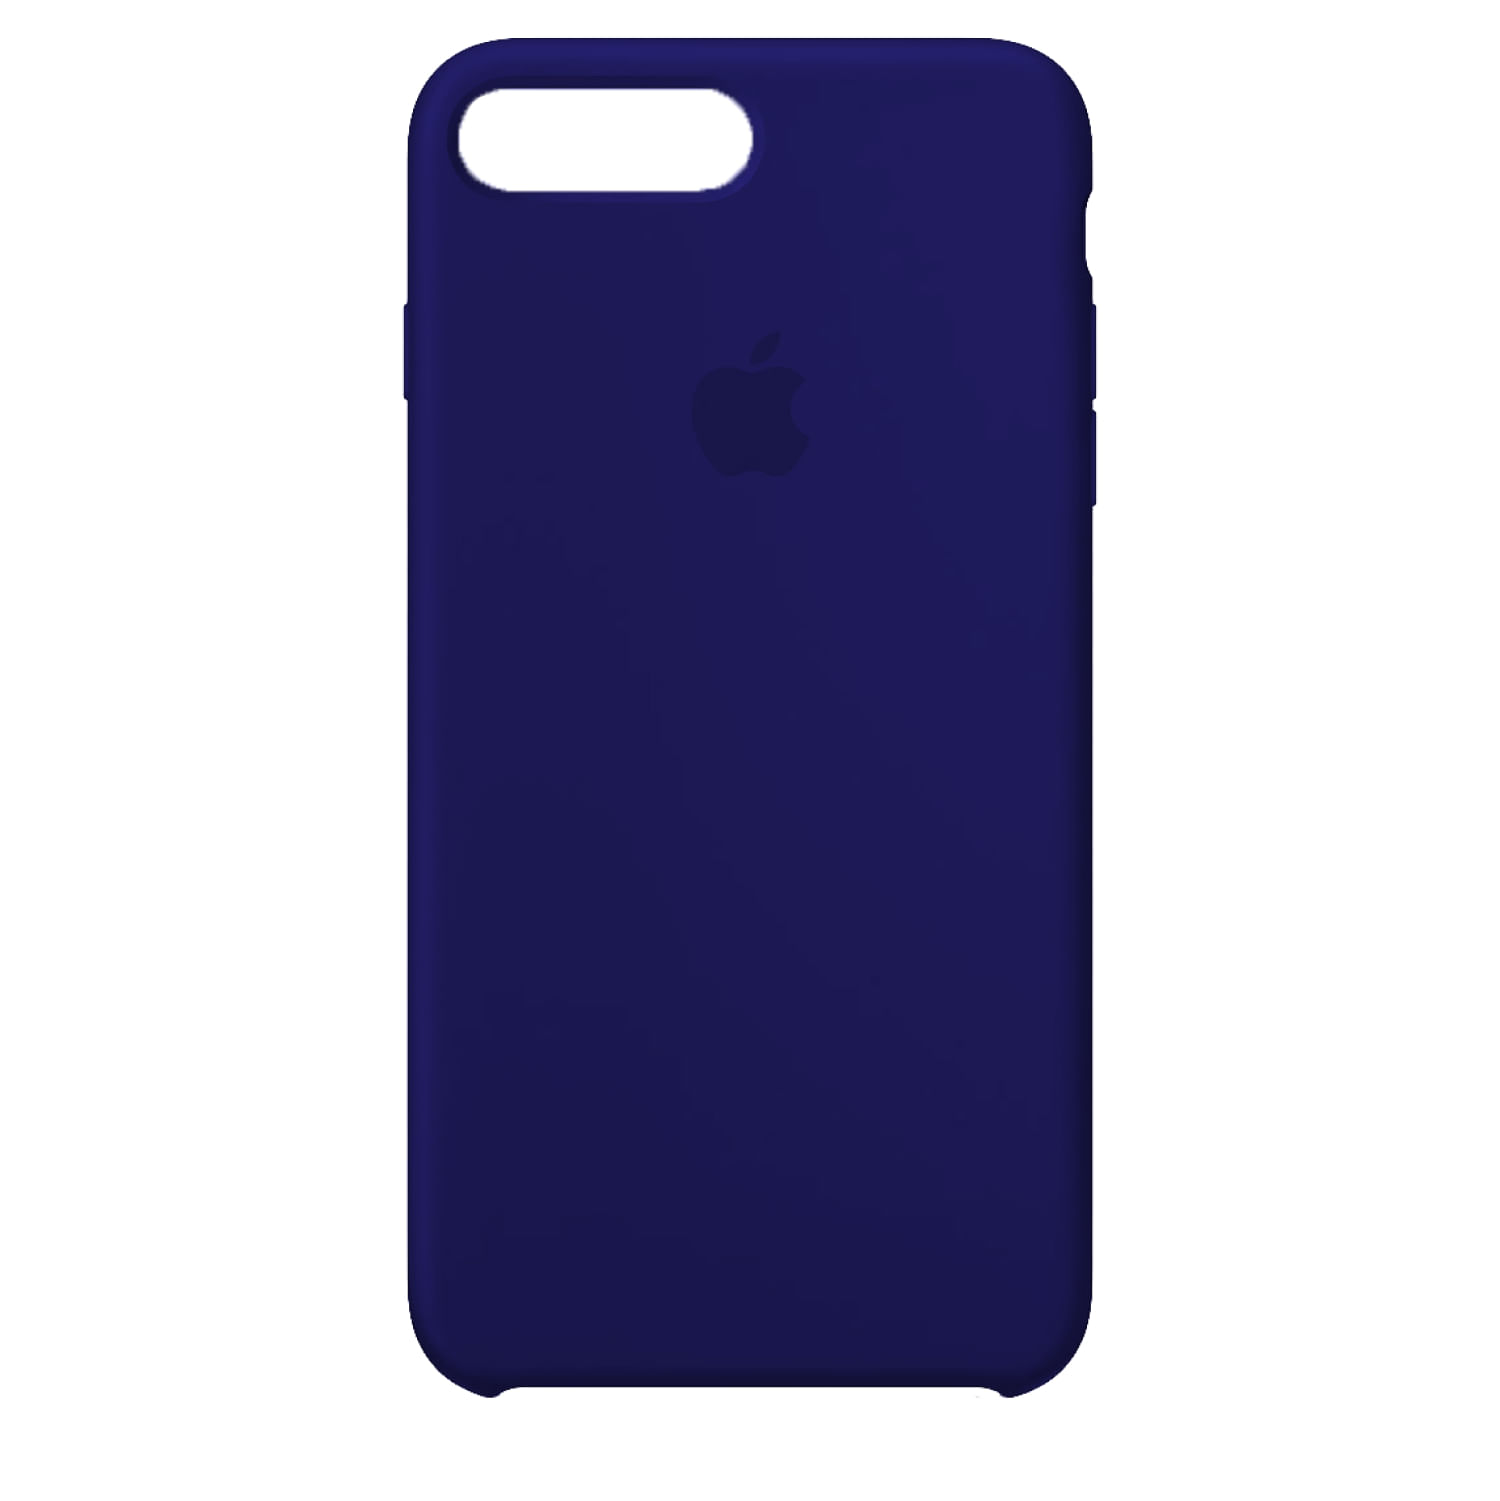 Case De Silicona Iphone X Azul